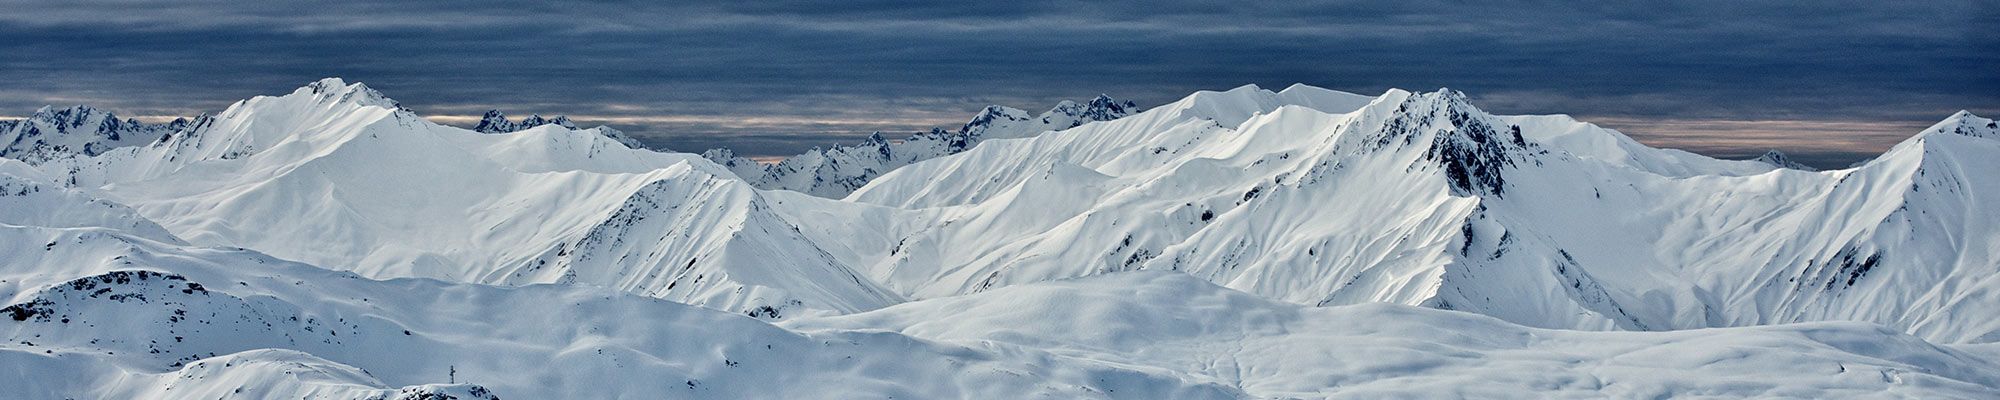 Instrumentación para meteorología alpina Estaciones meteorológicas automáticas fiables de alto rendimiento diseñadas para uso en duras condiciones ambientales